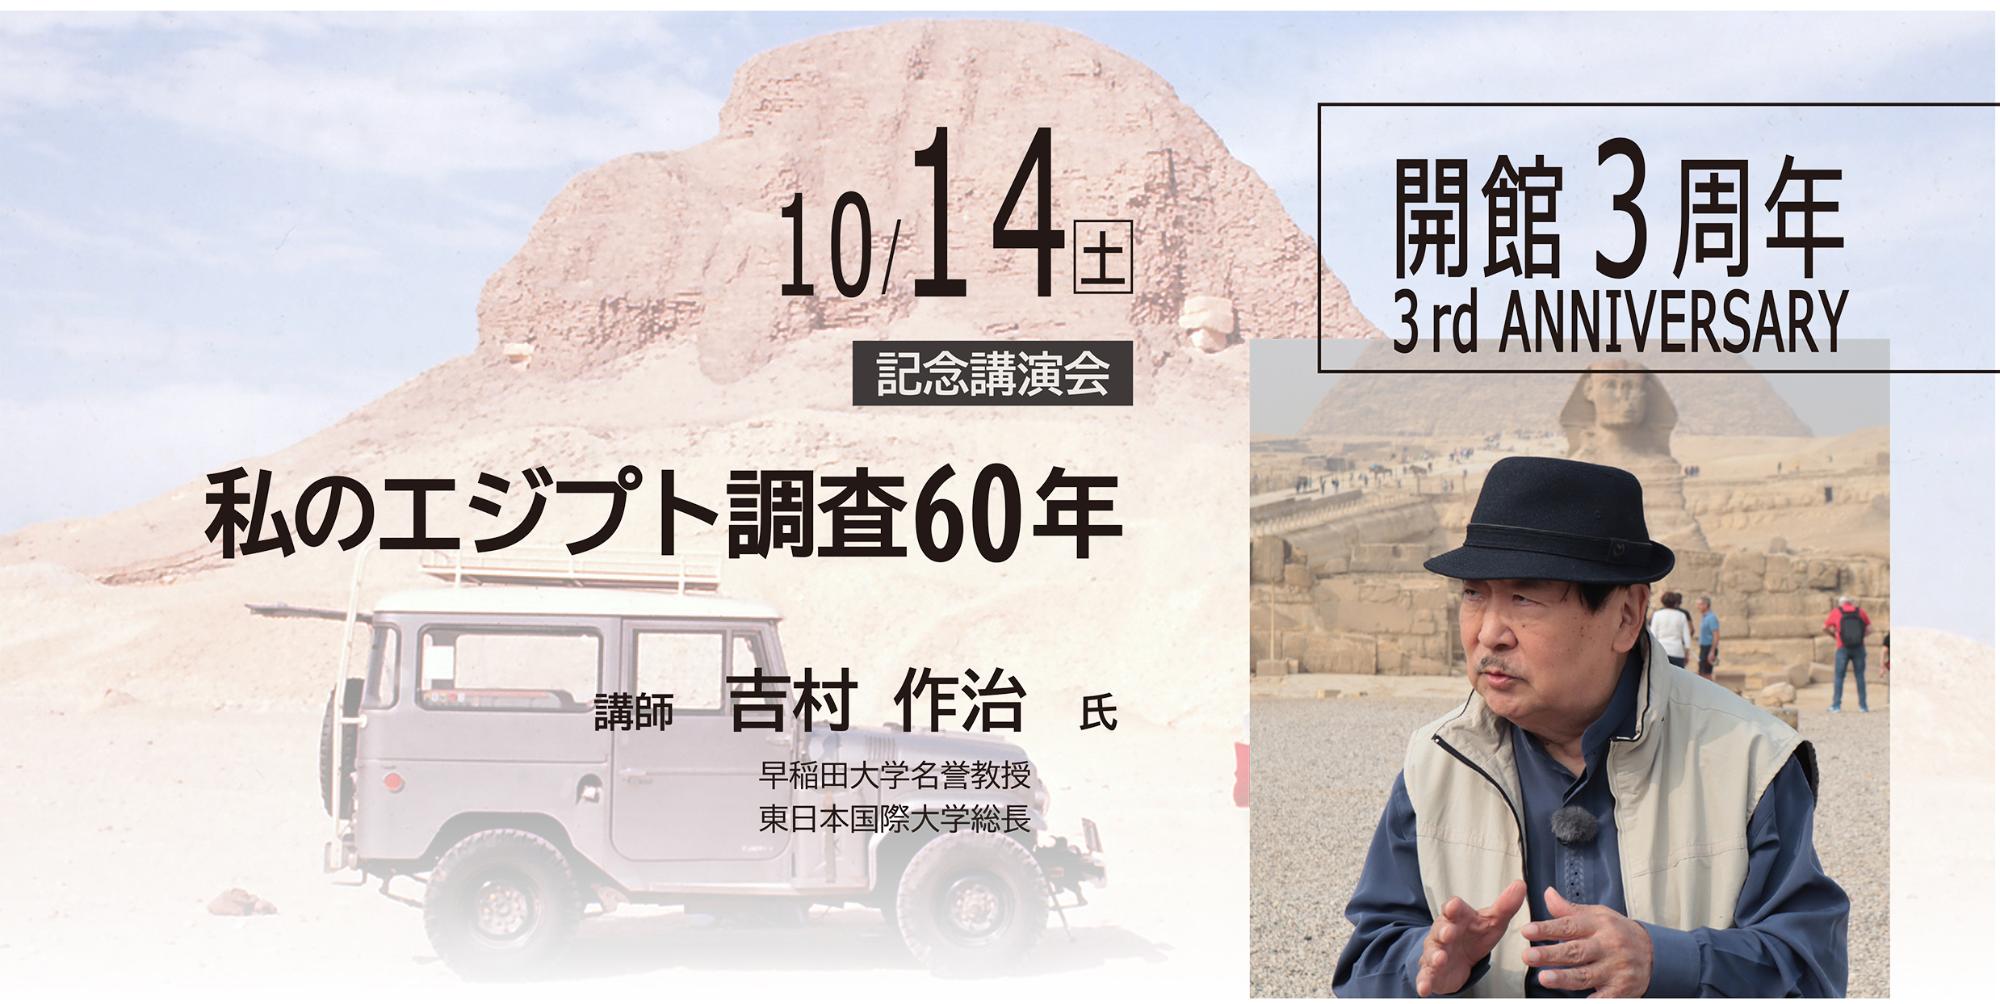 本庄早稲田の杜ミュージアム開館3周年記念講演会「私のエジプト調査60年」